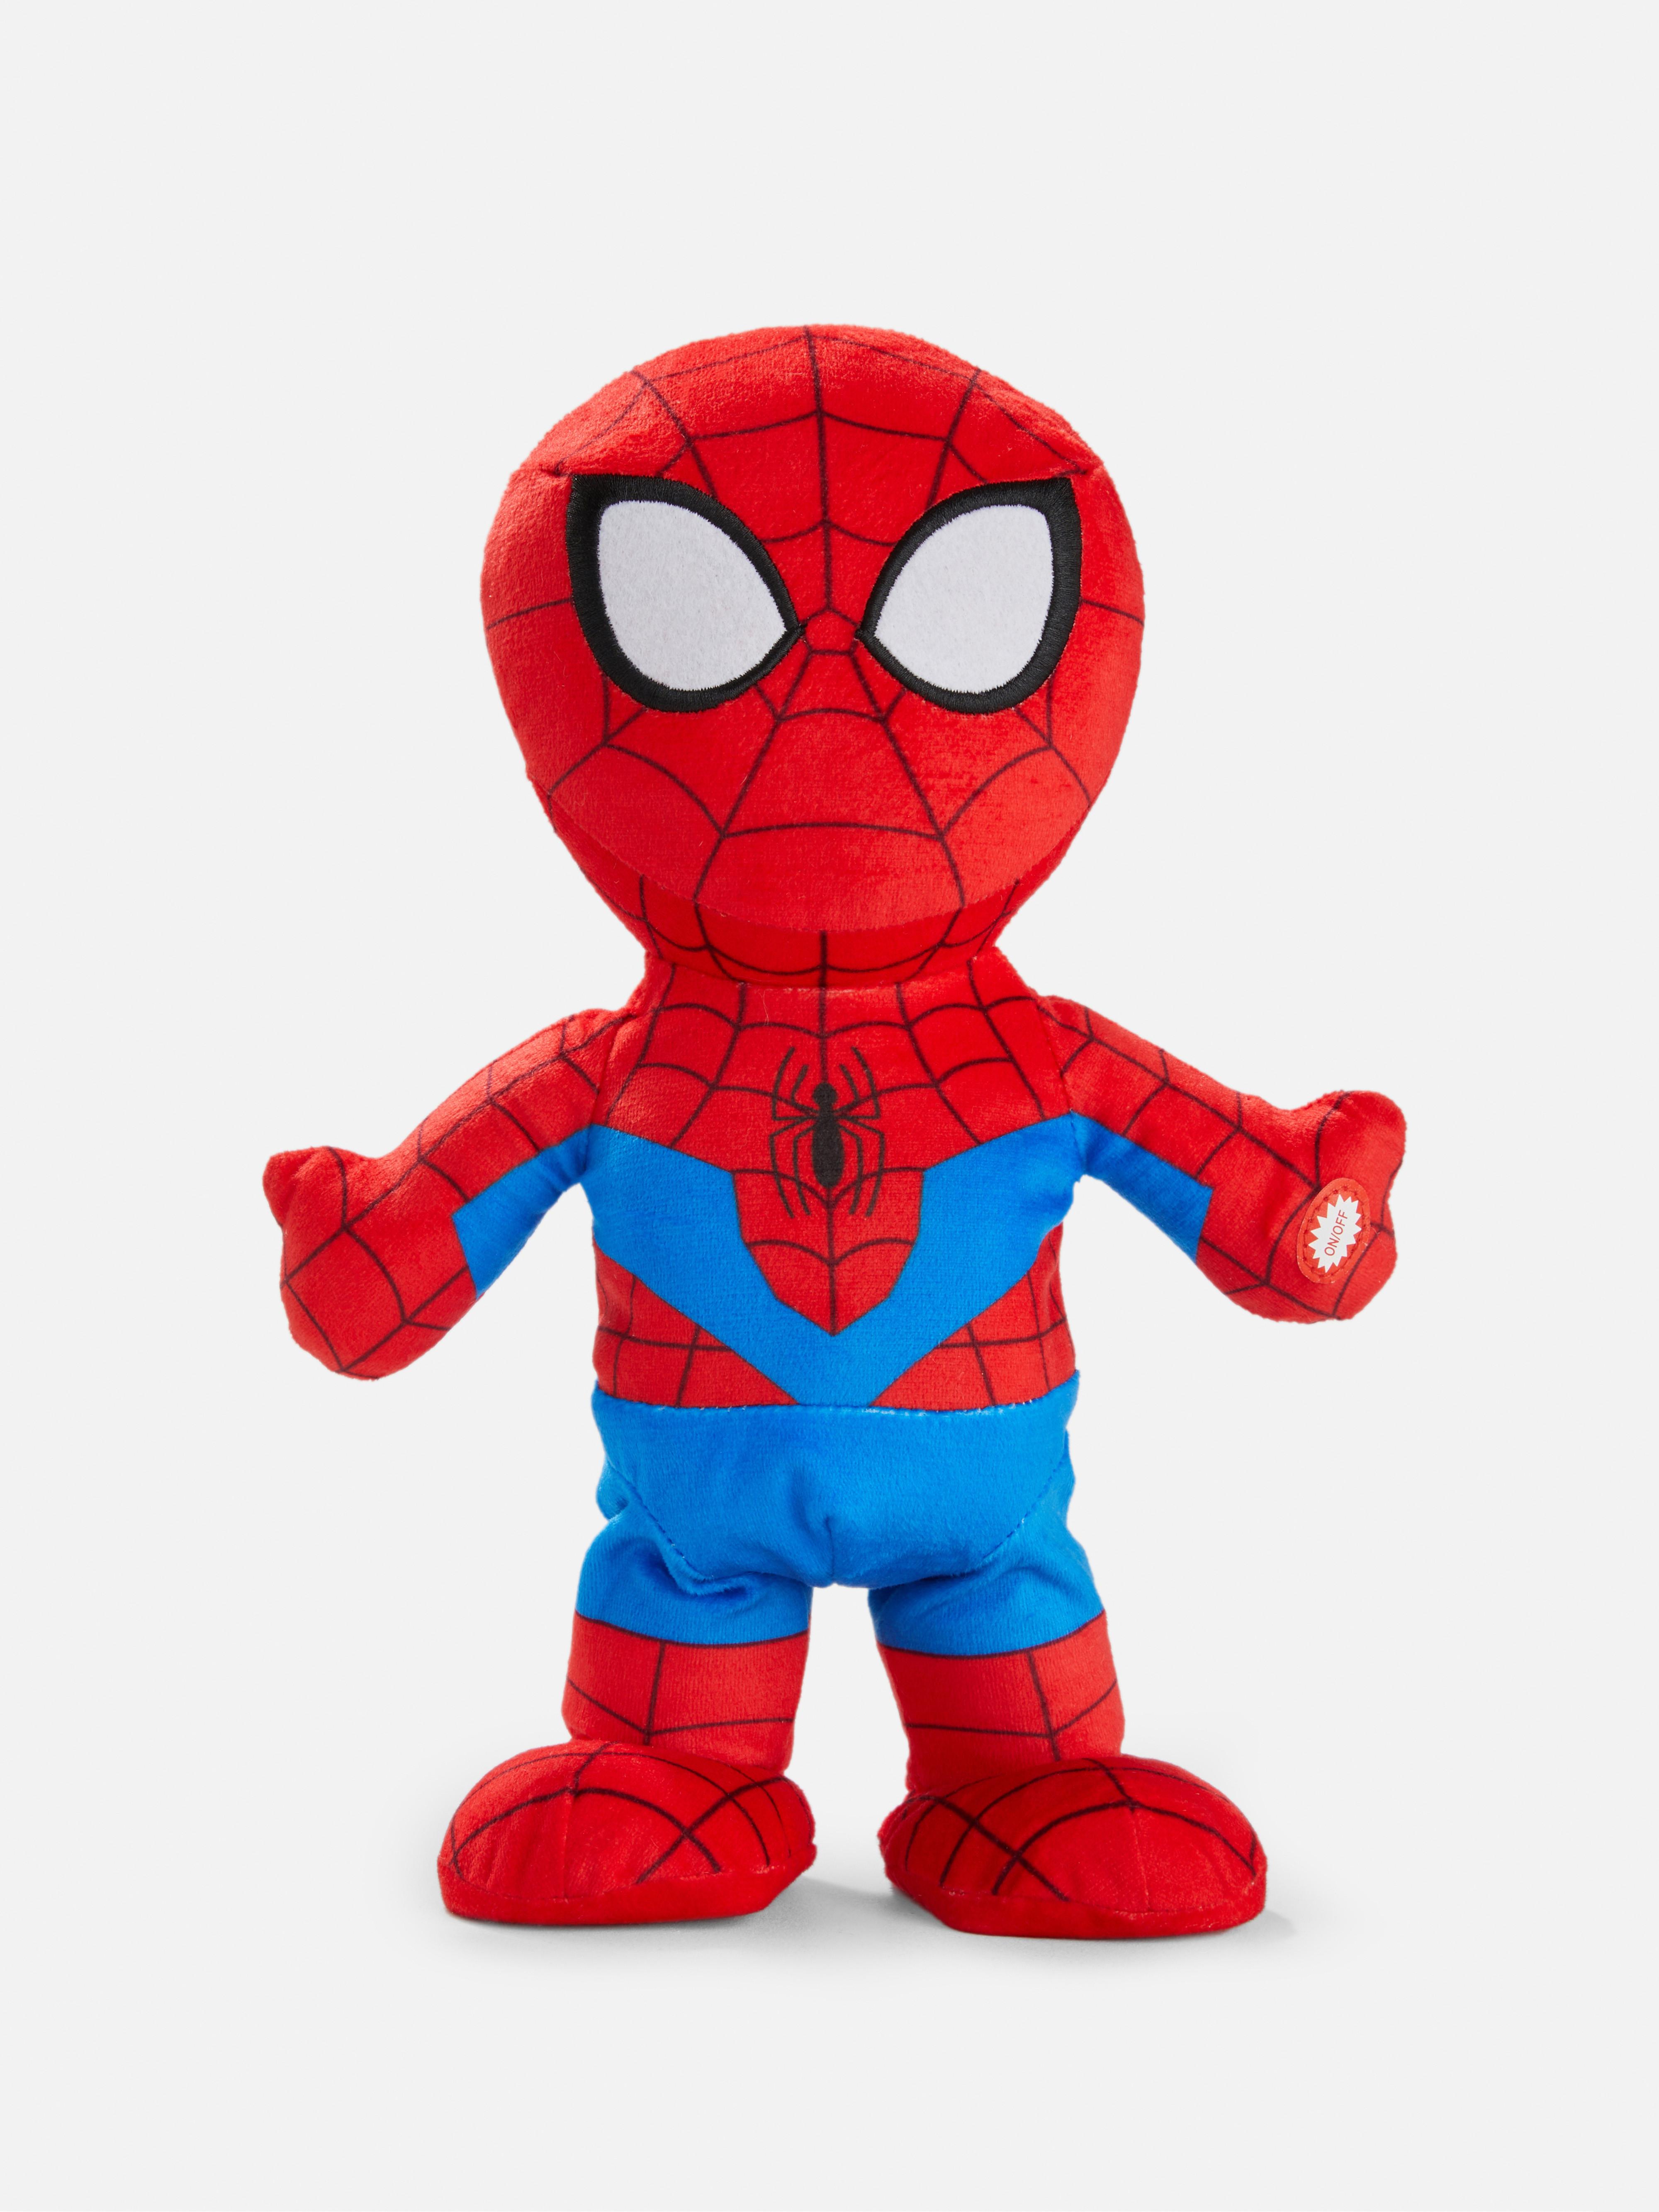 Marvel's Spider-Man Walking Talking Plush Toy